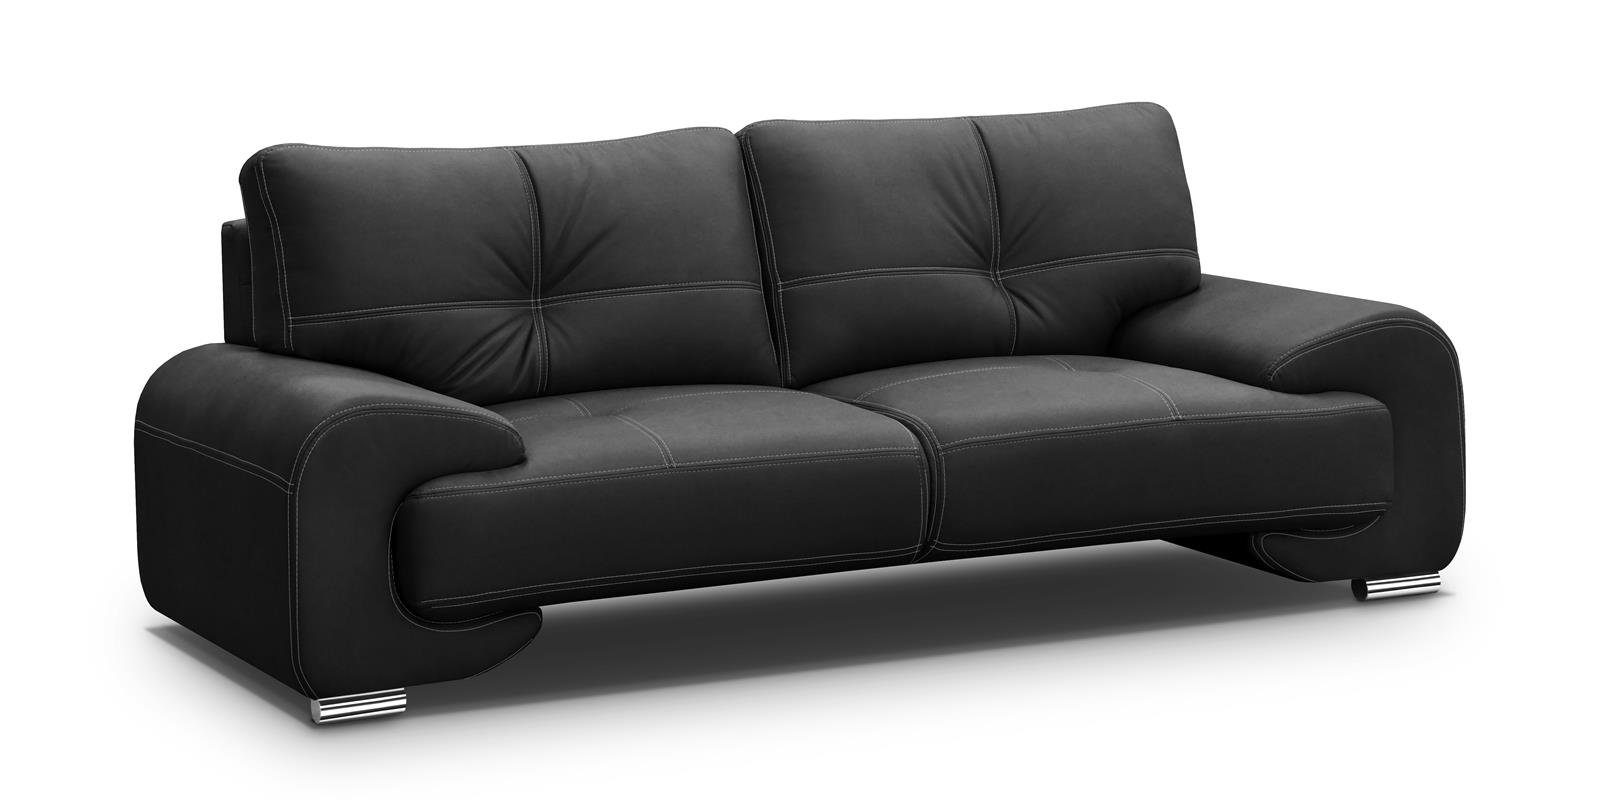 Beautysofa 3-Sitzer MAXIME LUX, 3-Sitzer Sofa im modernes Design, mit  Wellenunterfederung, mit dekorativen Nähten, Kunstleder, Dreisitzer